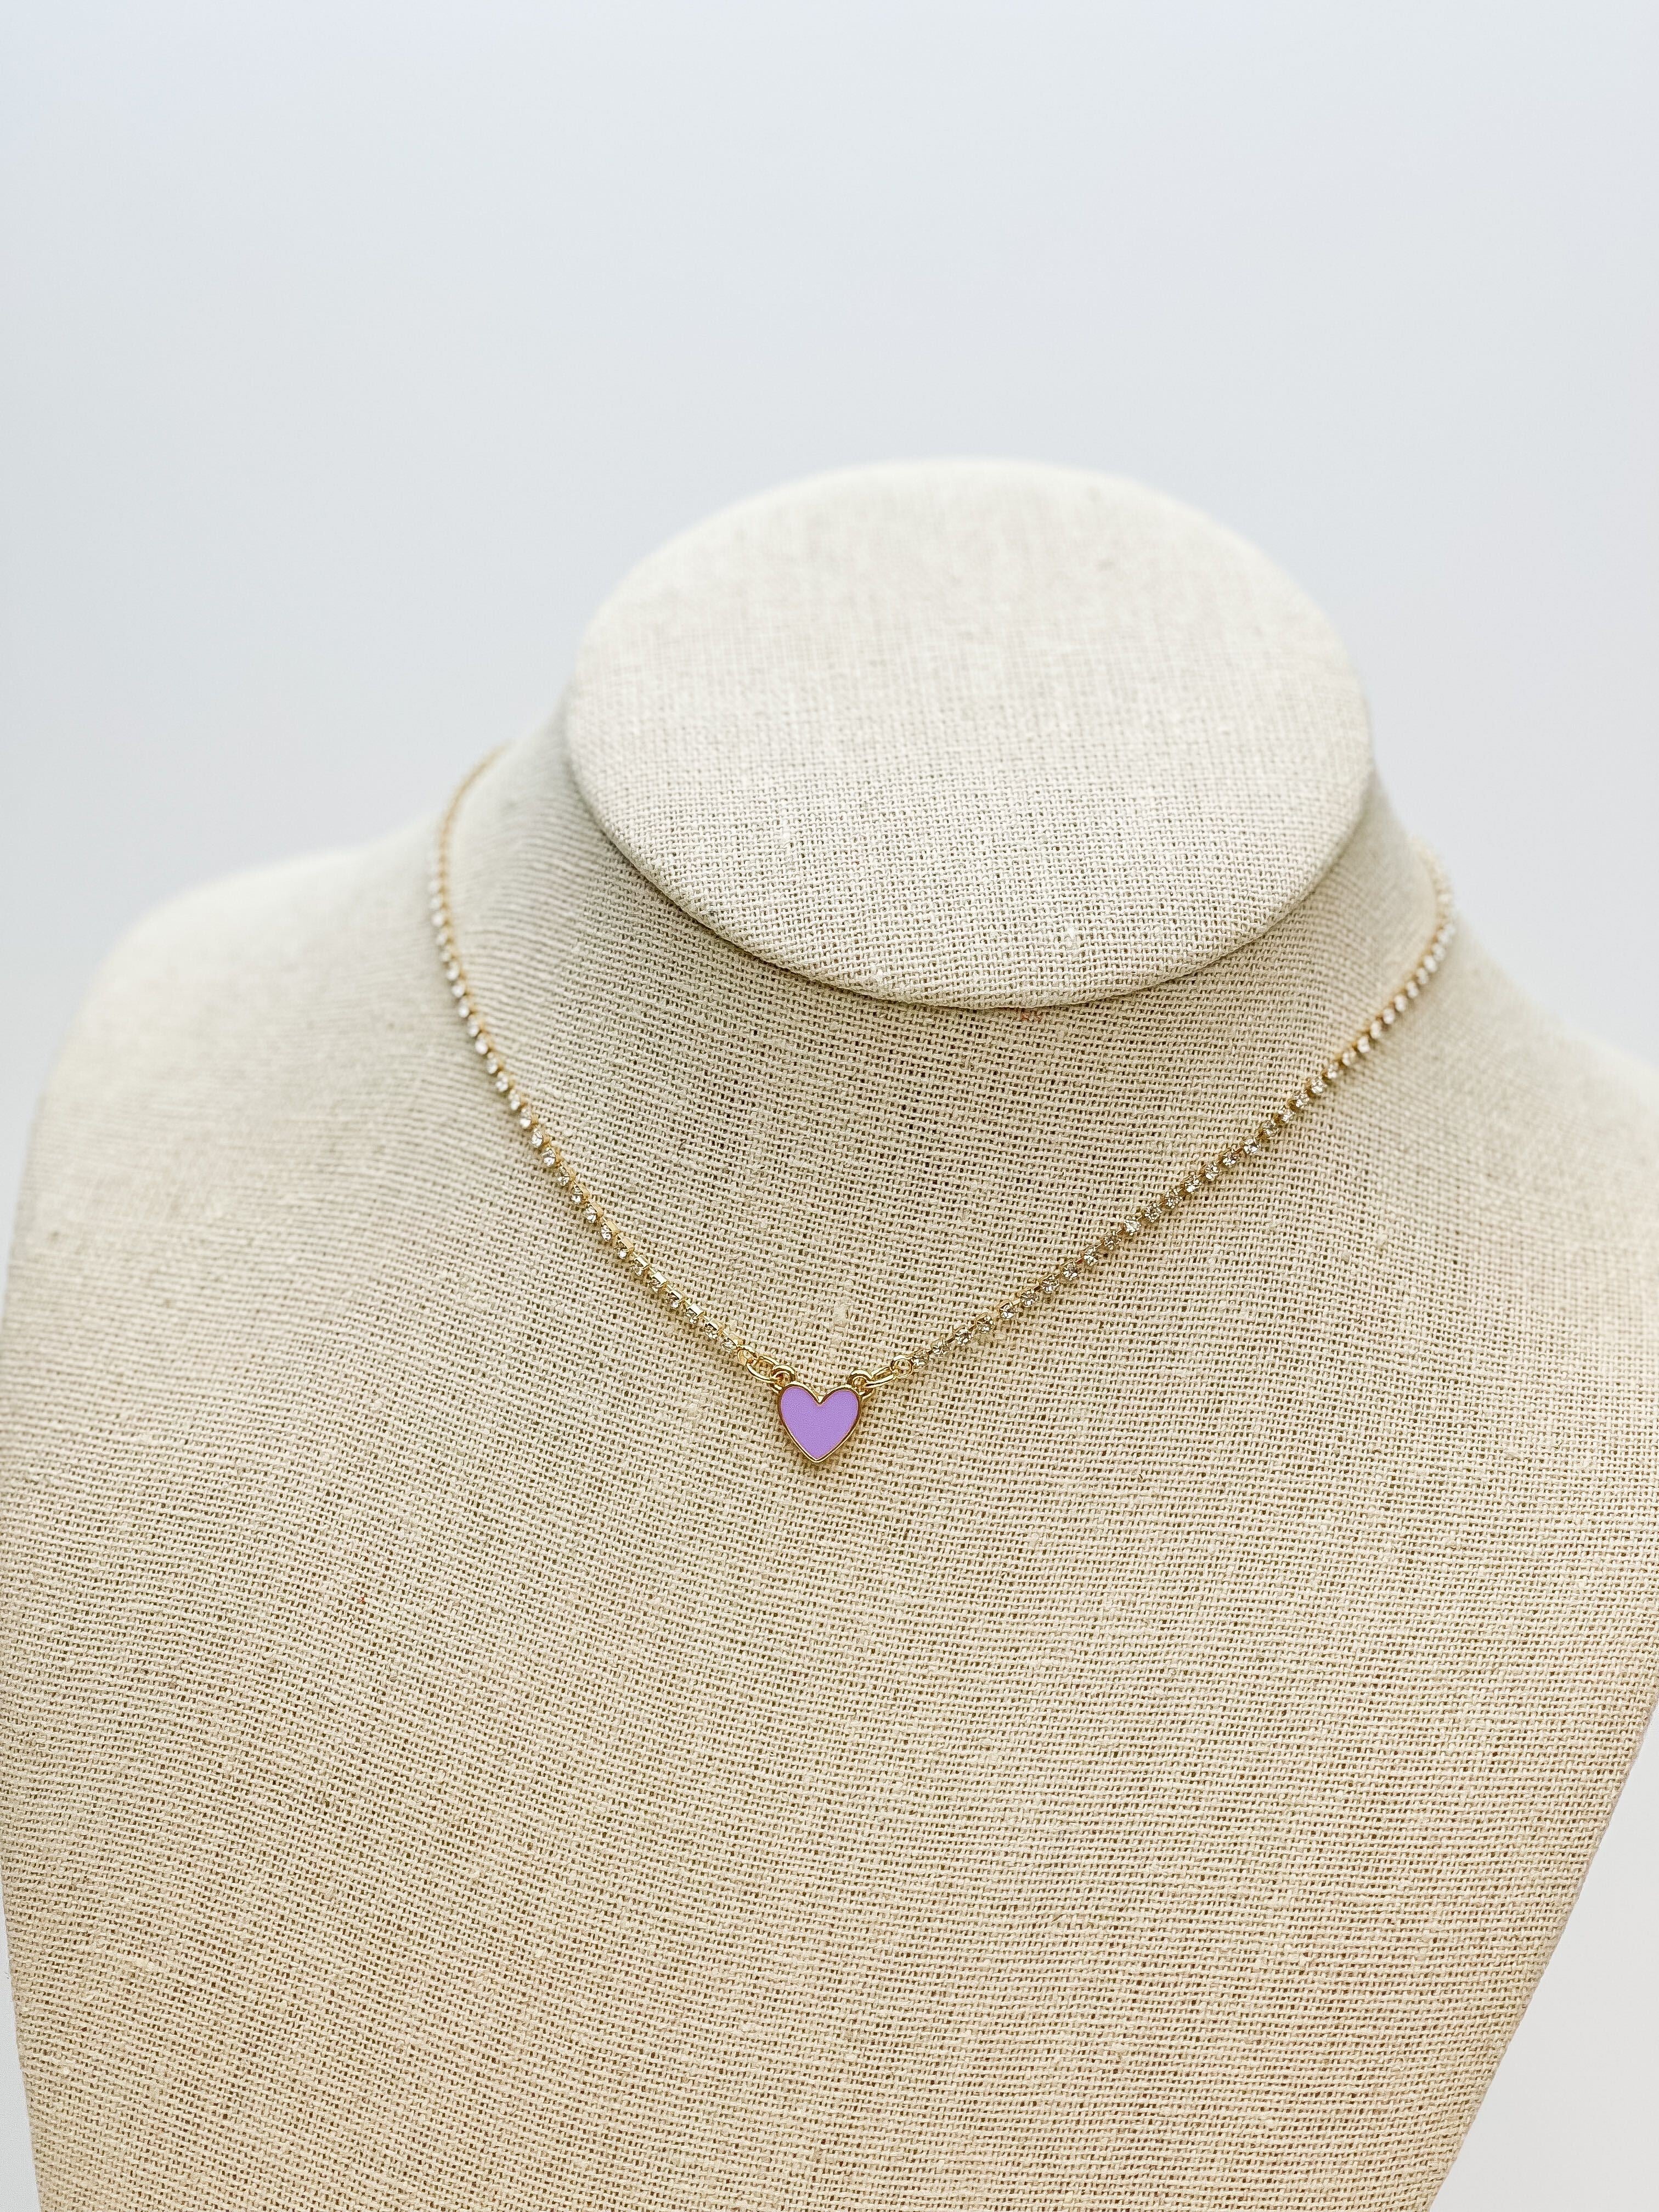 Glitzy Chain Heart Necklace - Purple